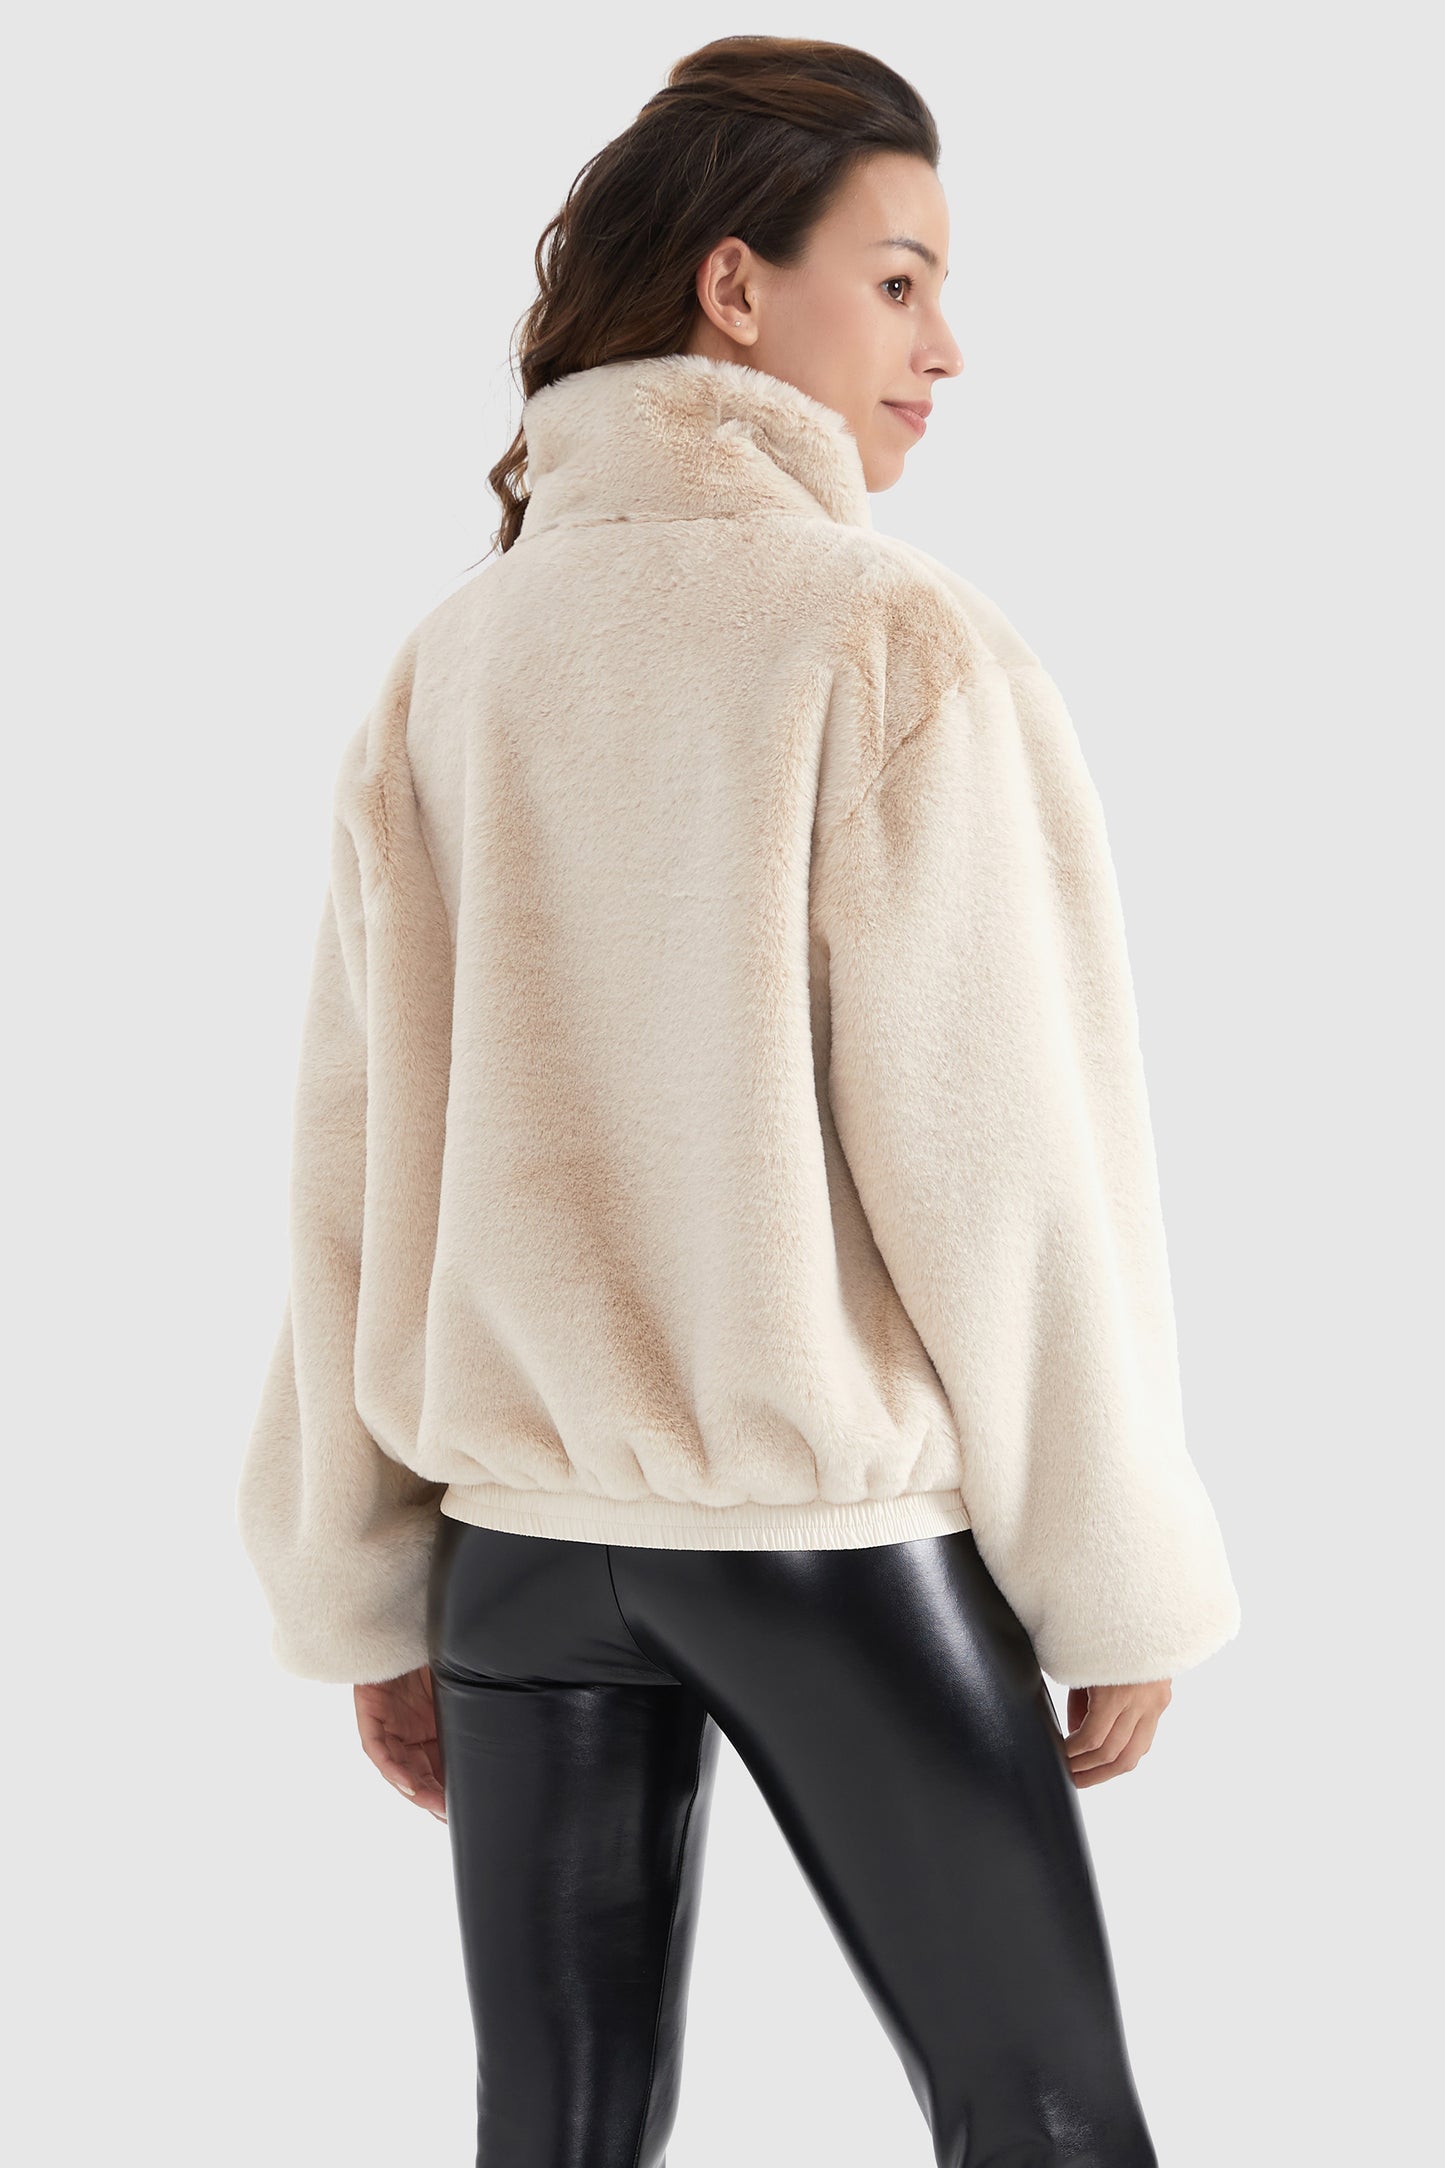 Zip Up Solid Faux Fur Winter Fuzzy Coat